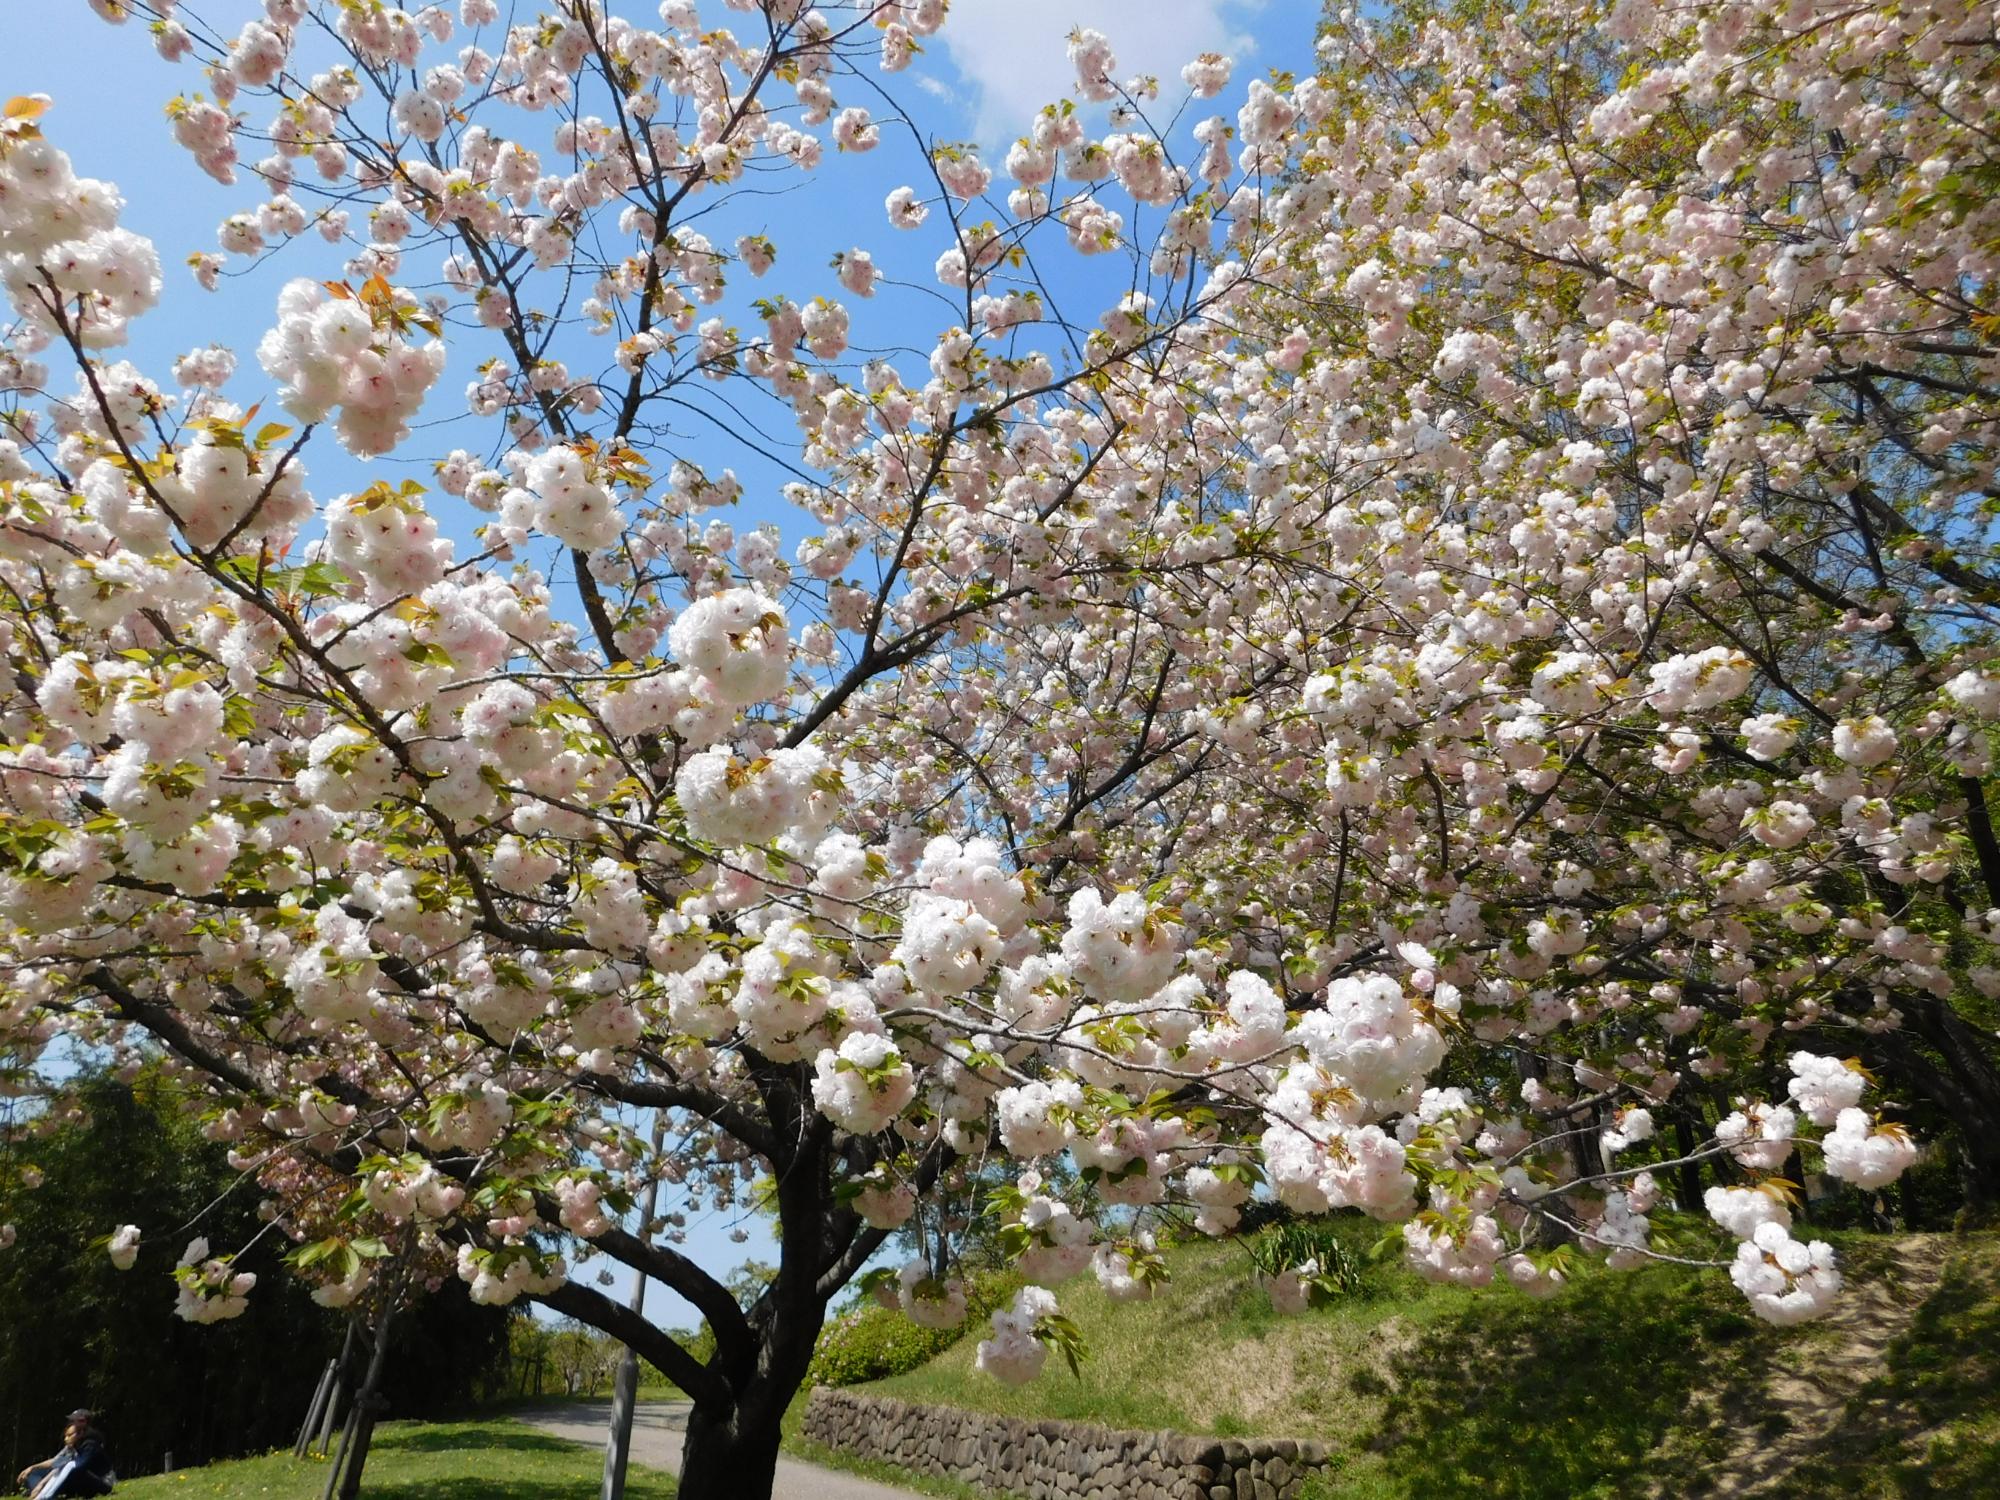 桜見の丘ではヤエザクラが満開できれいです。今年は、桜の開花も例年より早い状況から、沿道沿いのヤエザクラでは葉が出てきているというところです。